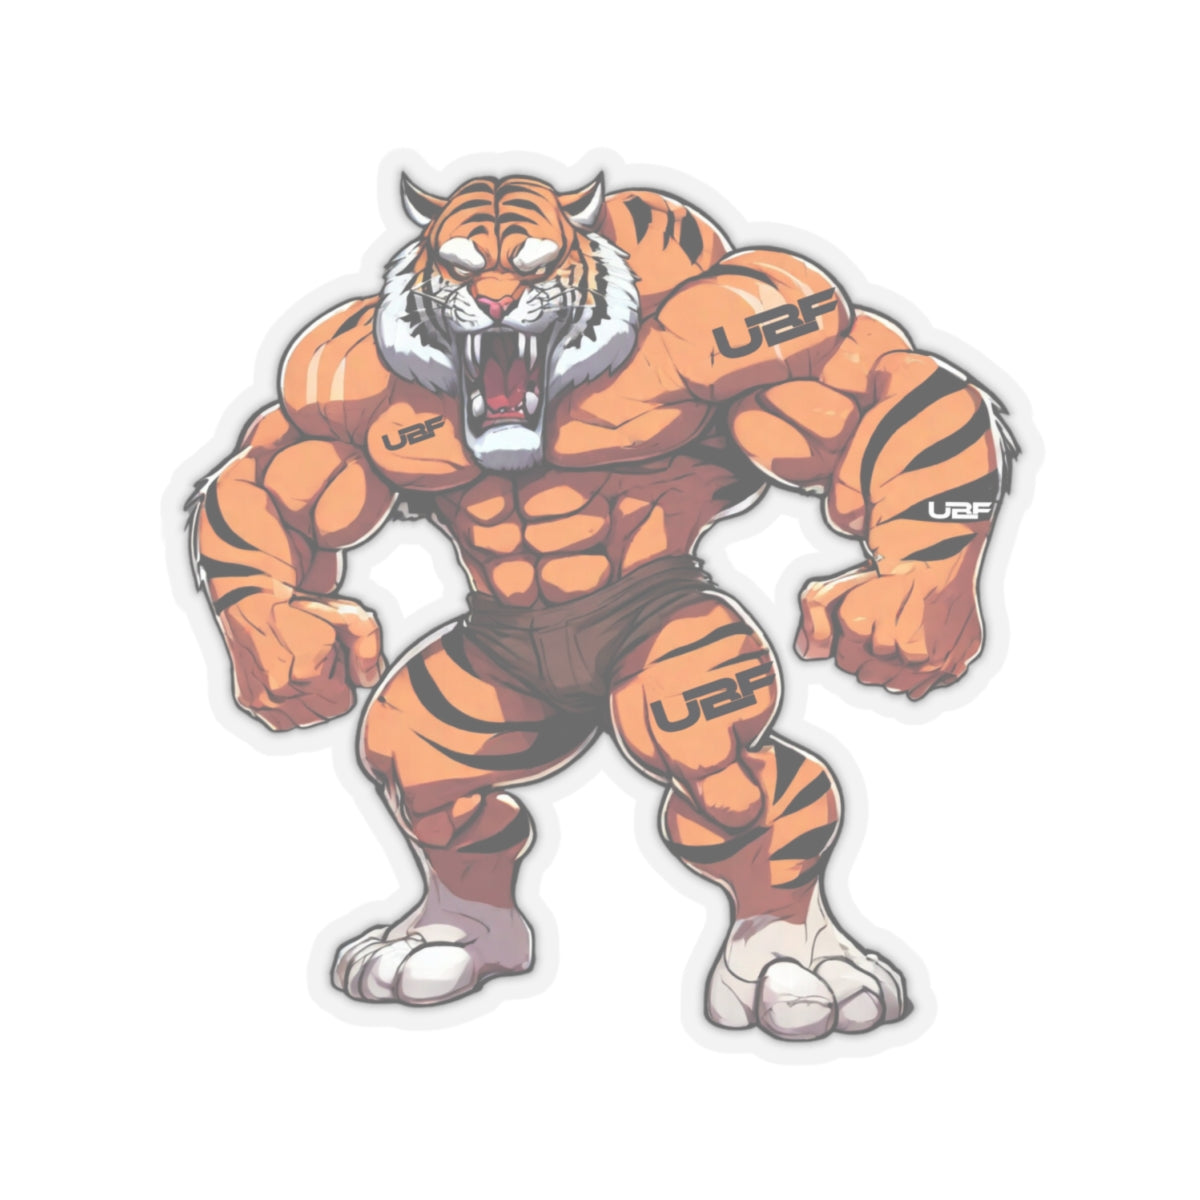 Tatted Tiger Kiss-Cut Stickers